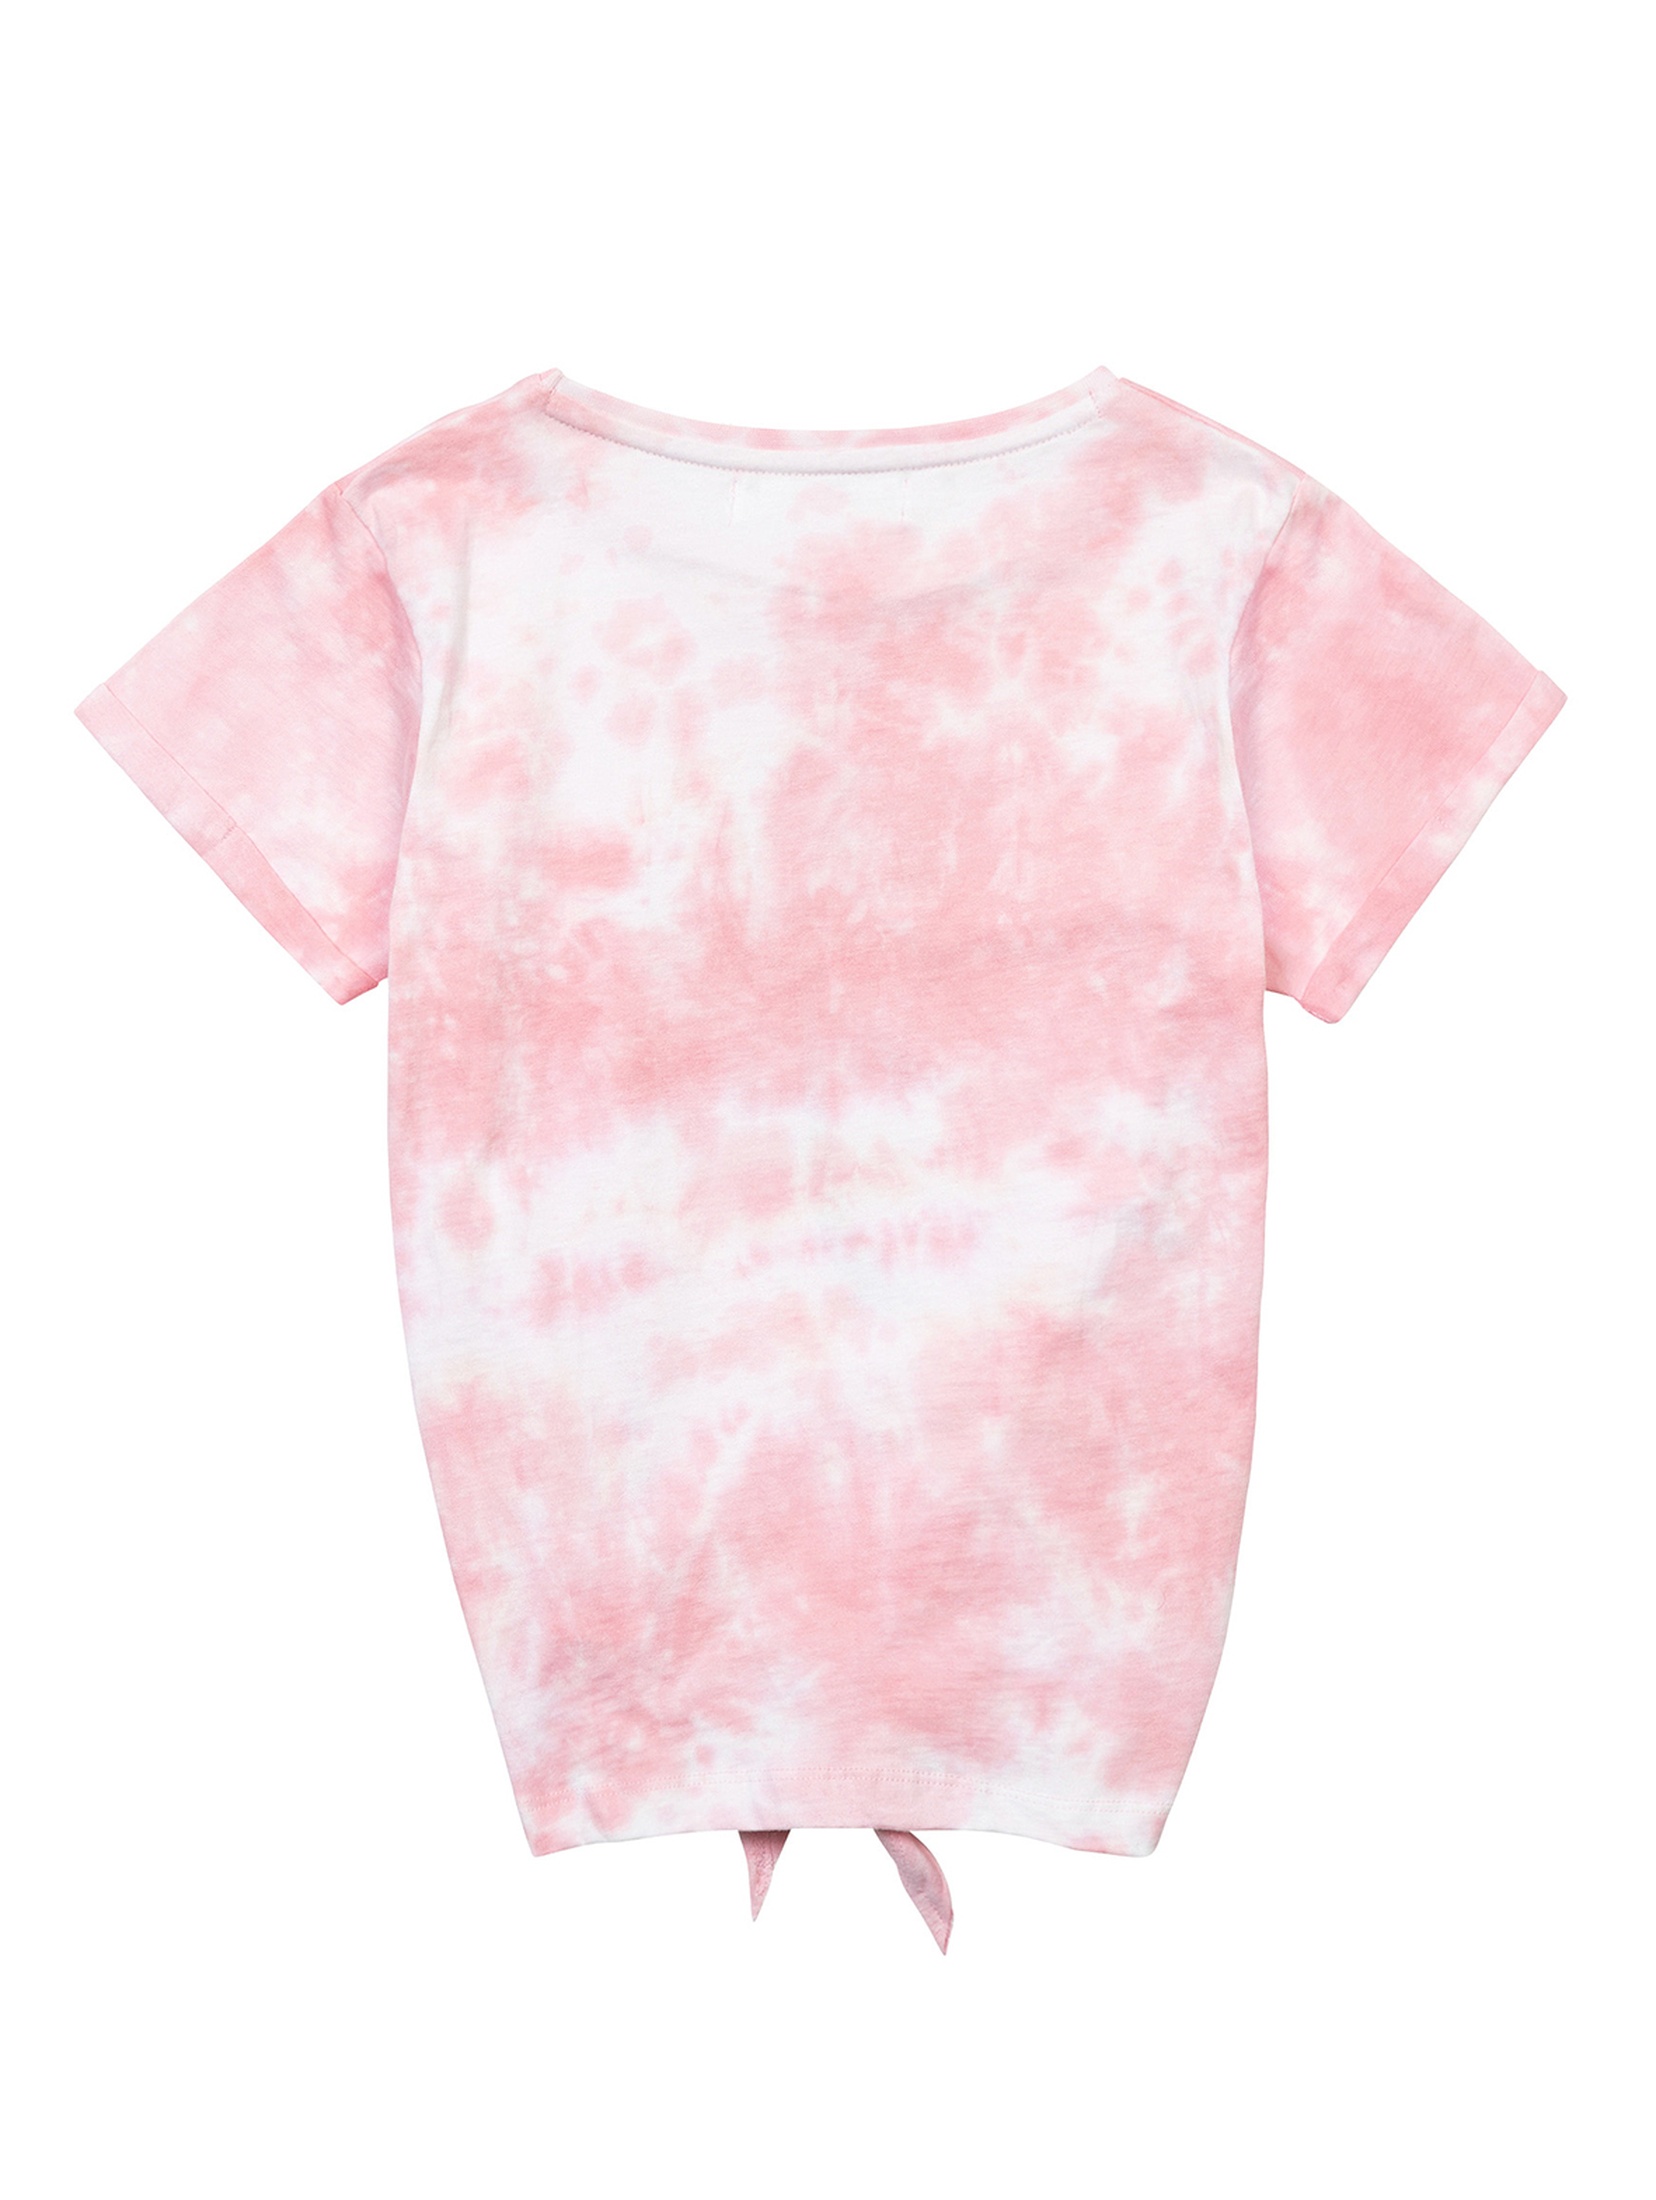 T-shirt z bawełny dla dziewczynki różowy z palmą